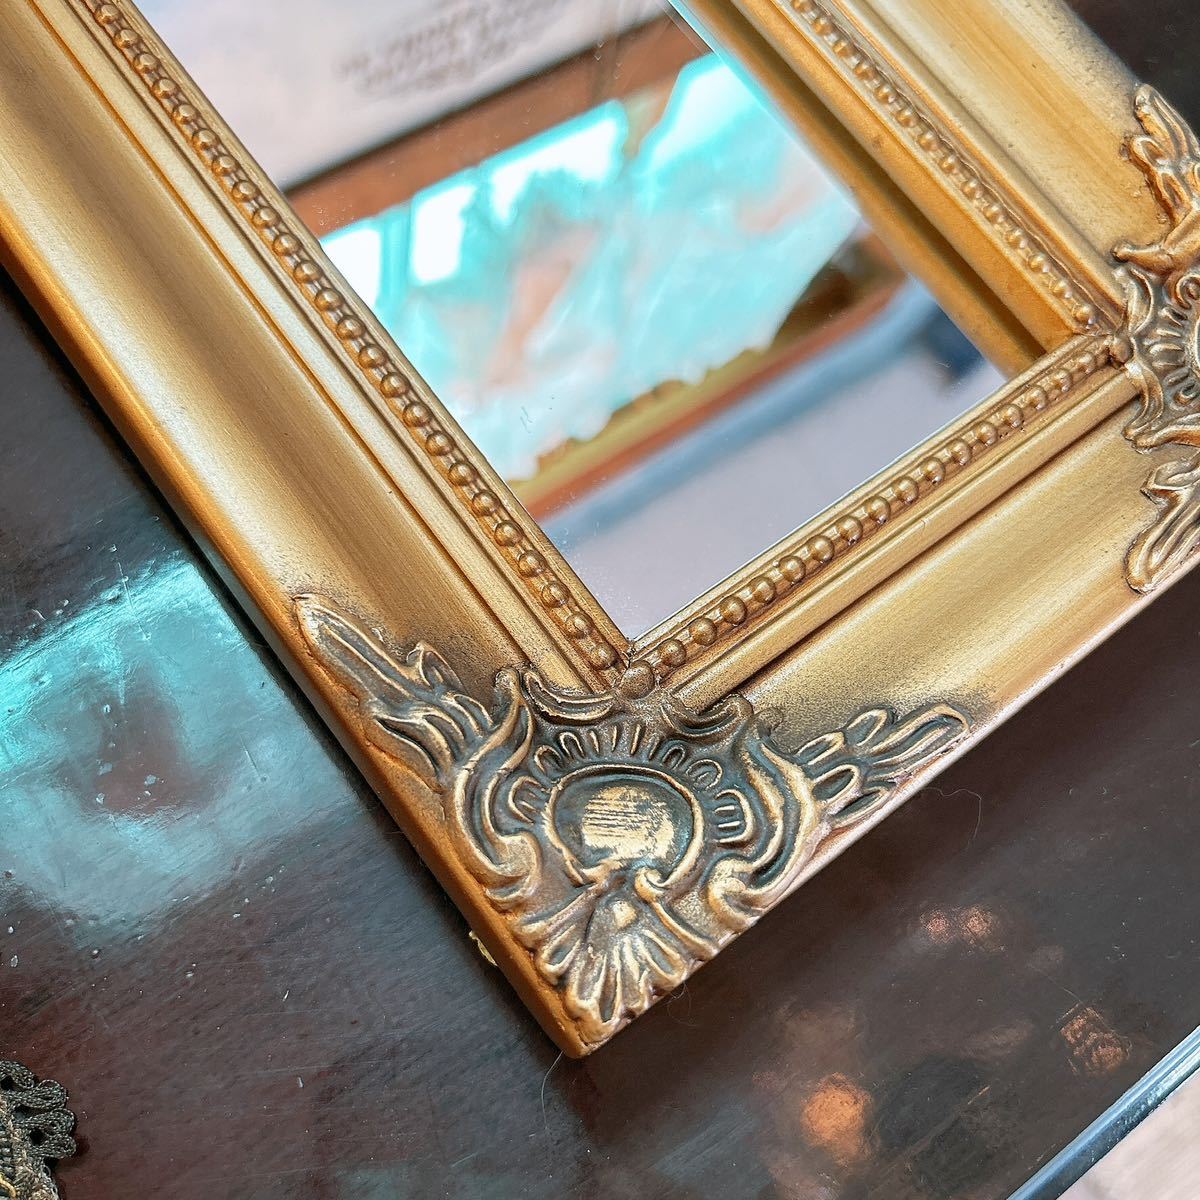 アンティークな部屋 おしゃれな鏡 一面鏡 No.2 ウォールミラー 1枚 壁掛け鏡 gold #インテリア装飾品 #ドレッサーミラー #ウォールミラー